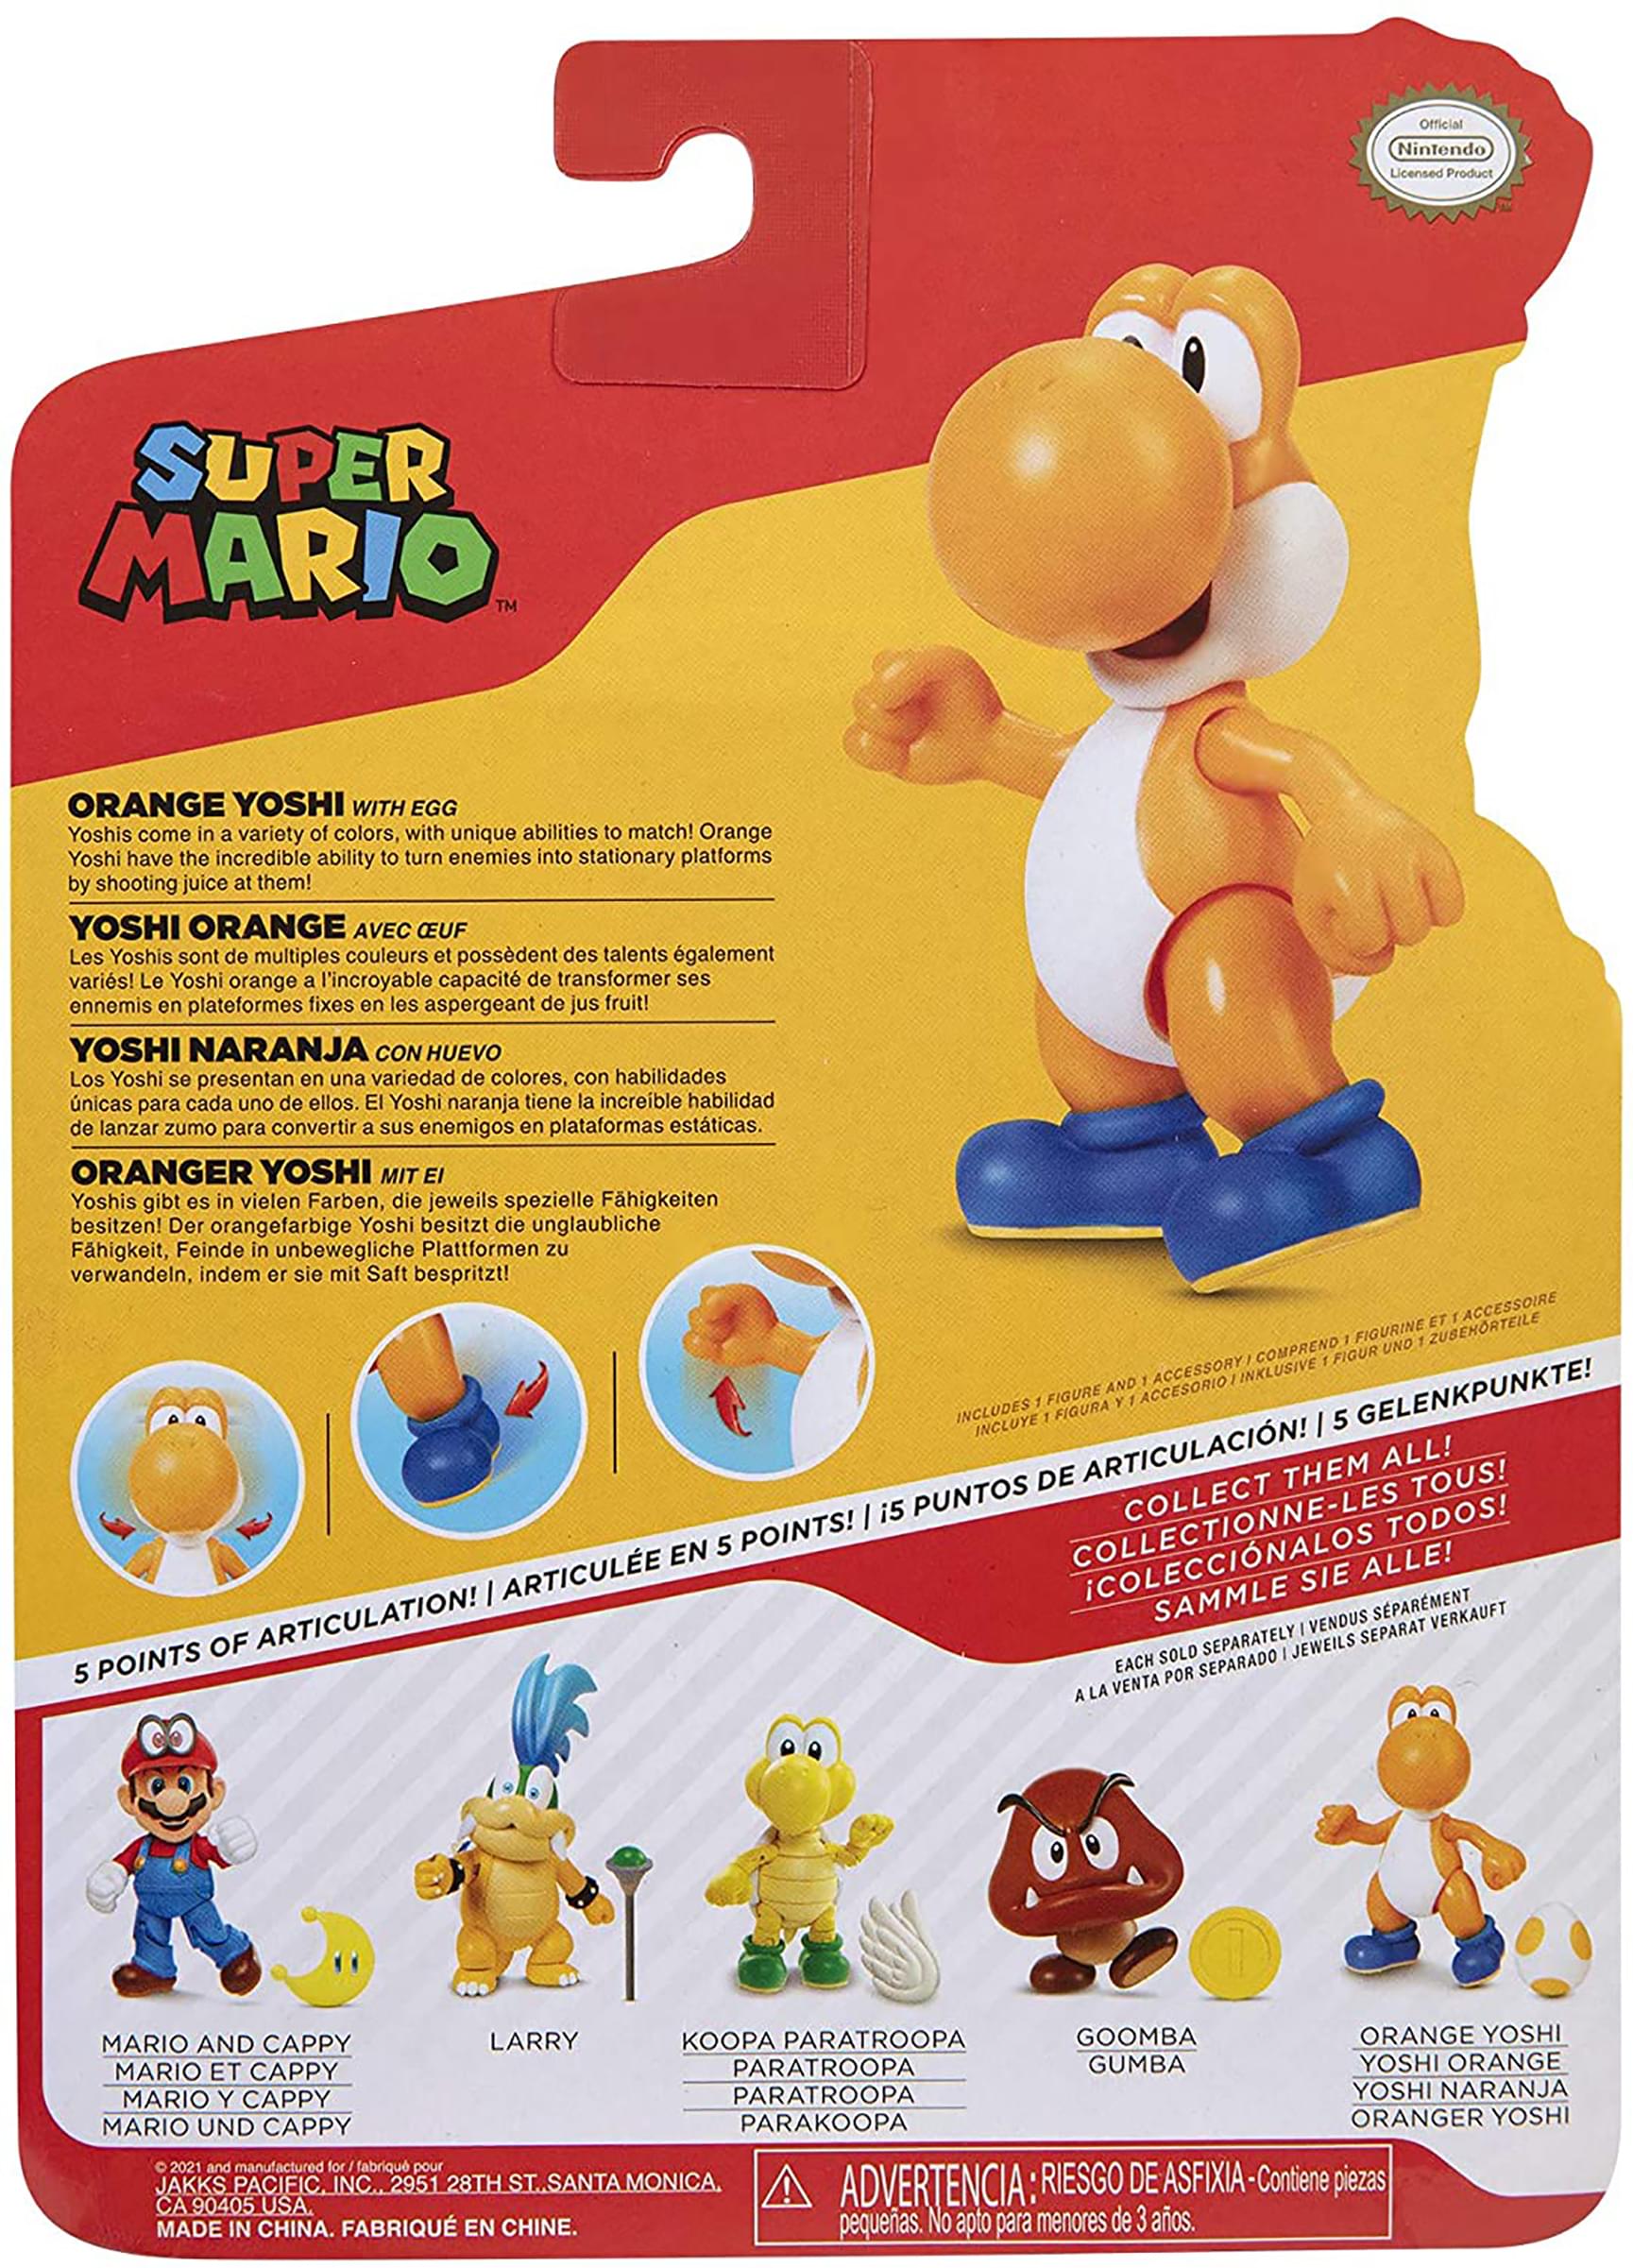 Super Mario World of Nintendo 4 Inch Figure | Orange Yoshi